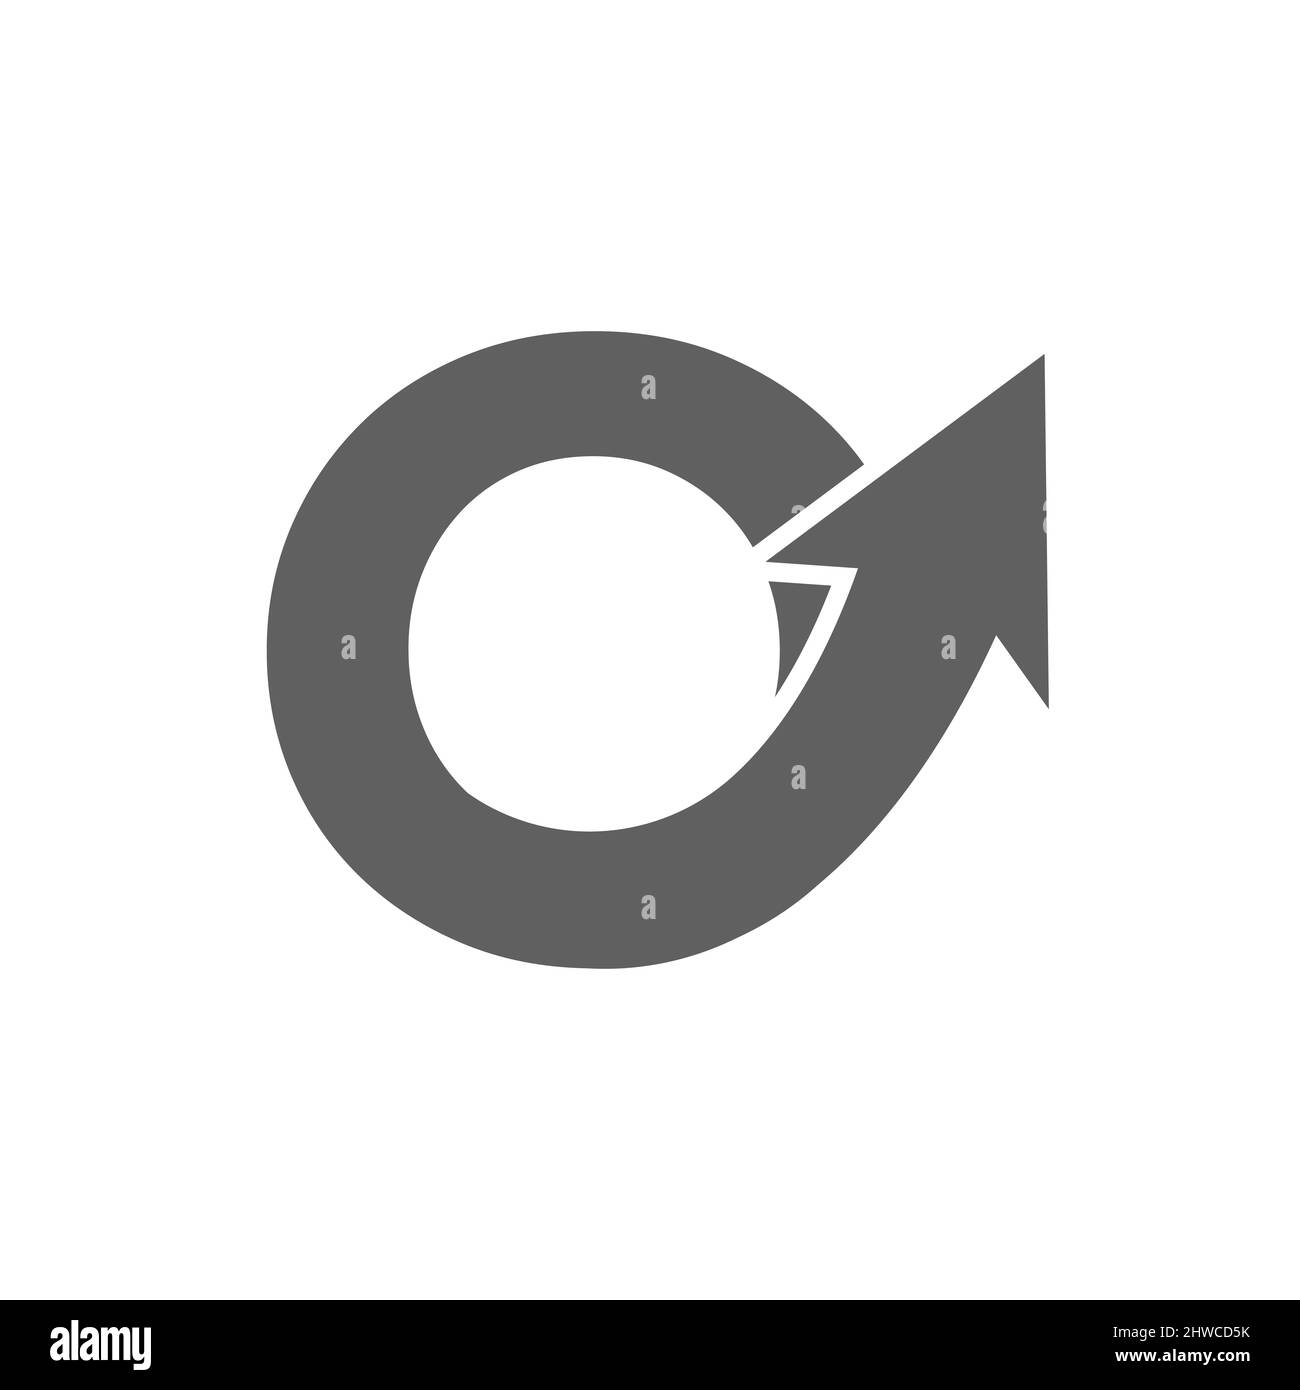 Logo de marketing financier sur la lettre O, concept de flèche de croissance initiale. Modèle de conception du logo de la gestion financière et comptable de collecte de fonds Illustration de Vecteur